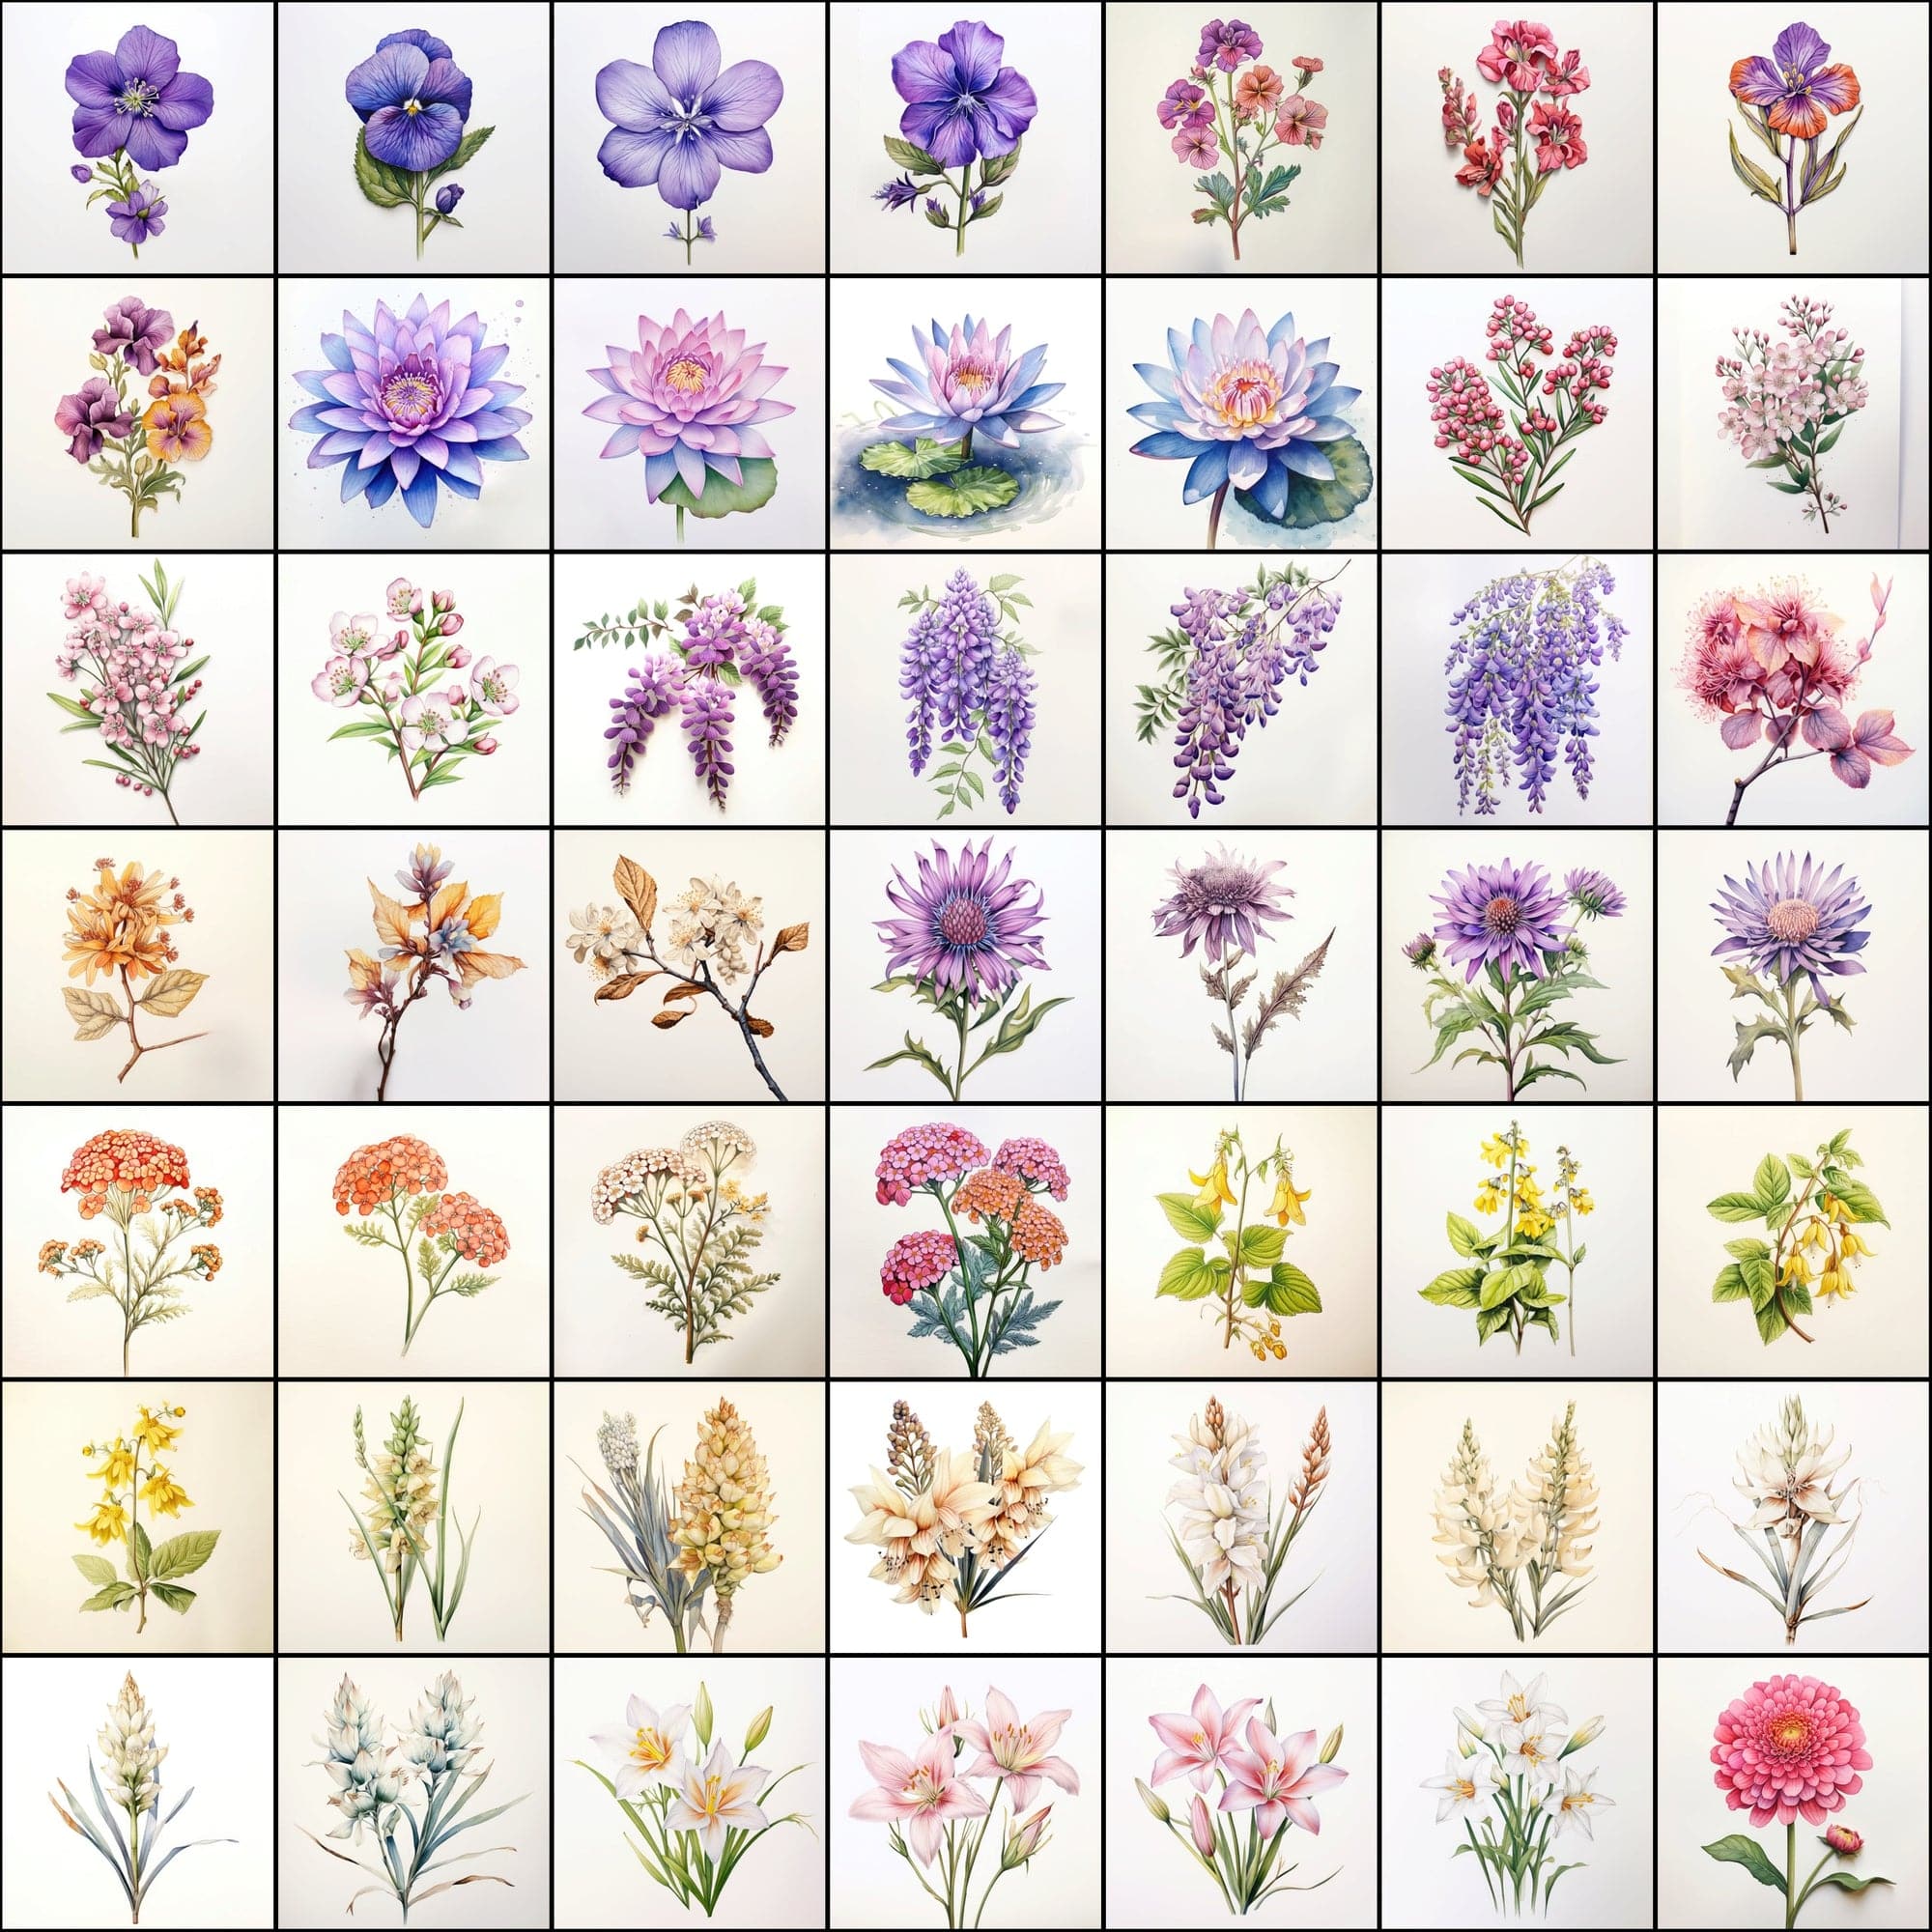 630 Flower PNG Images with Transparent Backgrounds & Commercial License Digital Download Sumobundle